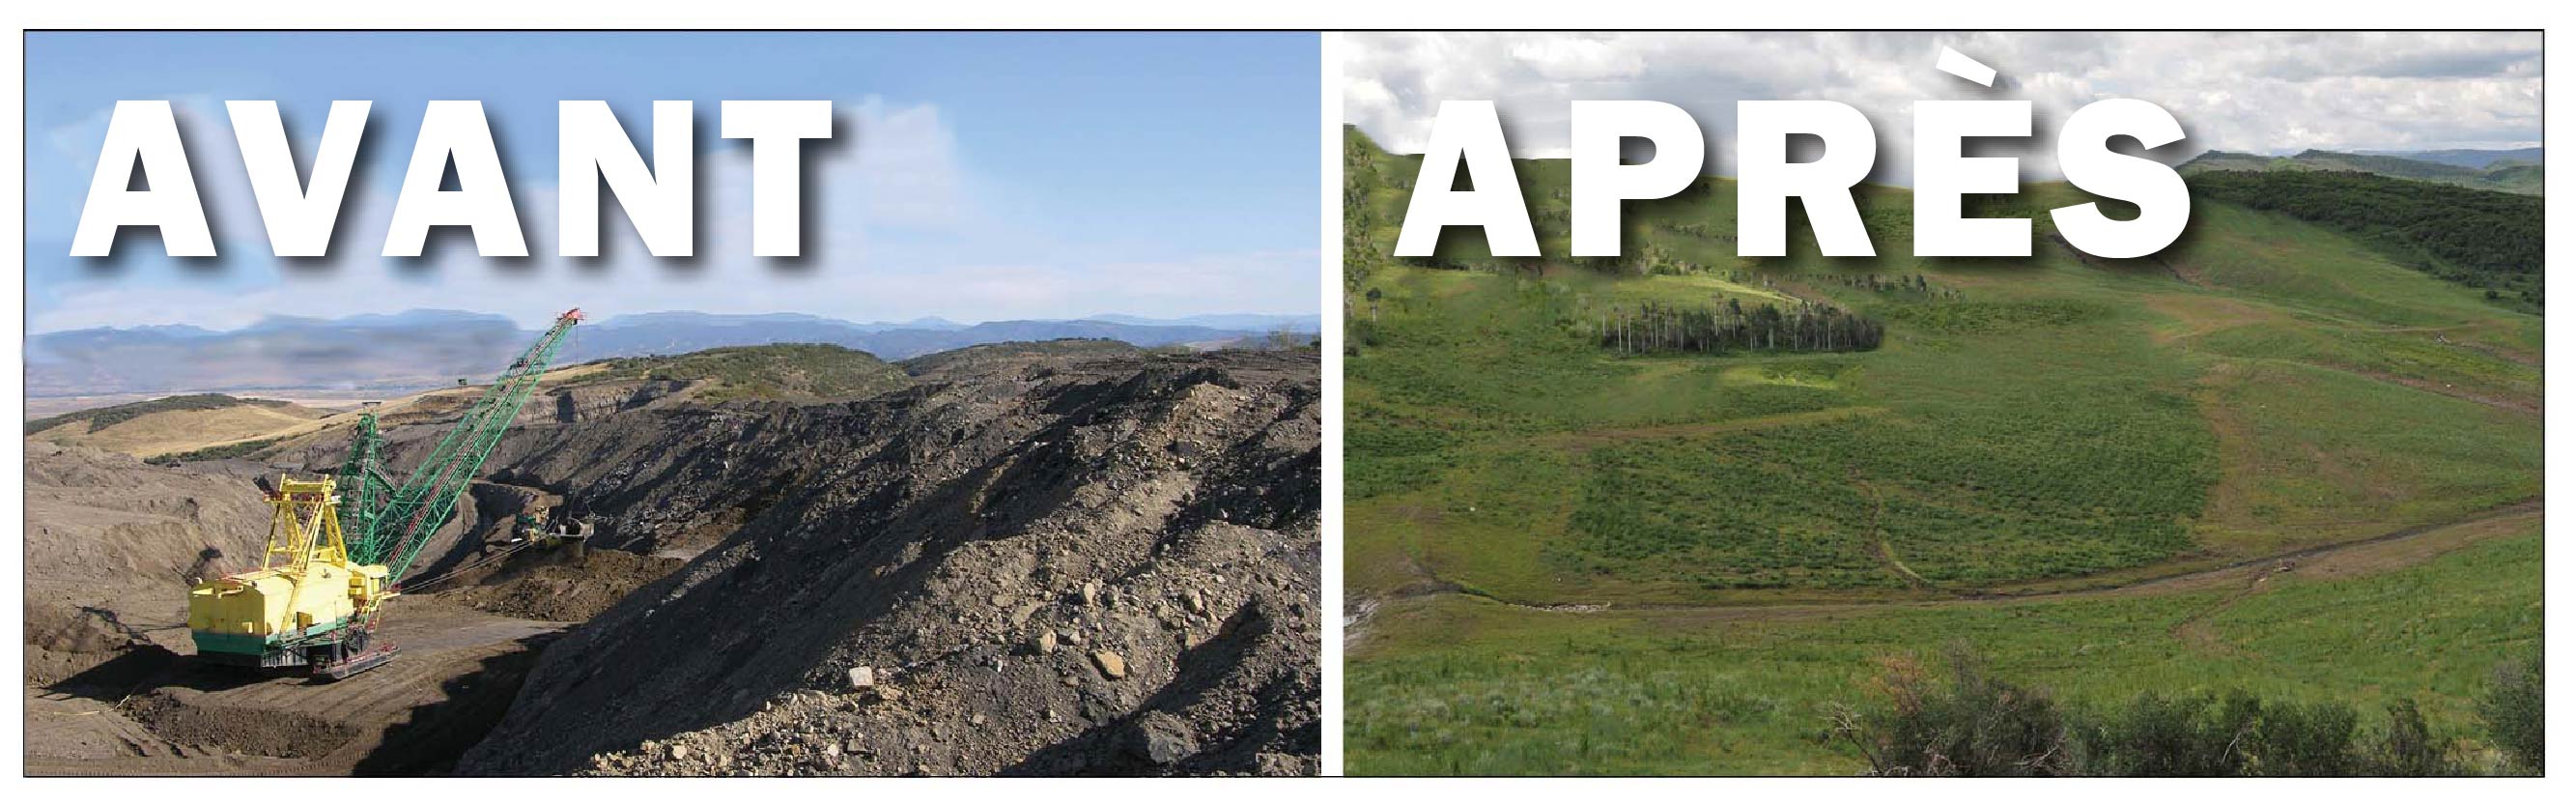 Deux photos en couleur montrent le même paysage. Elles sont intitulées « avant » et « après »